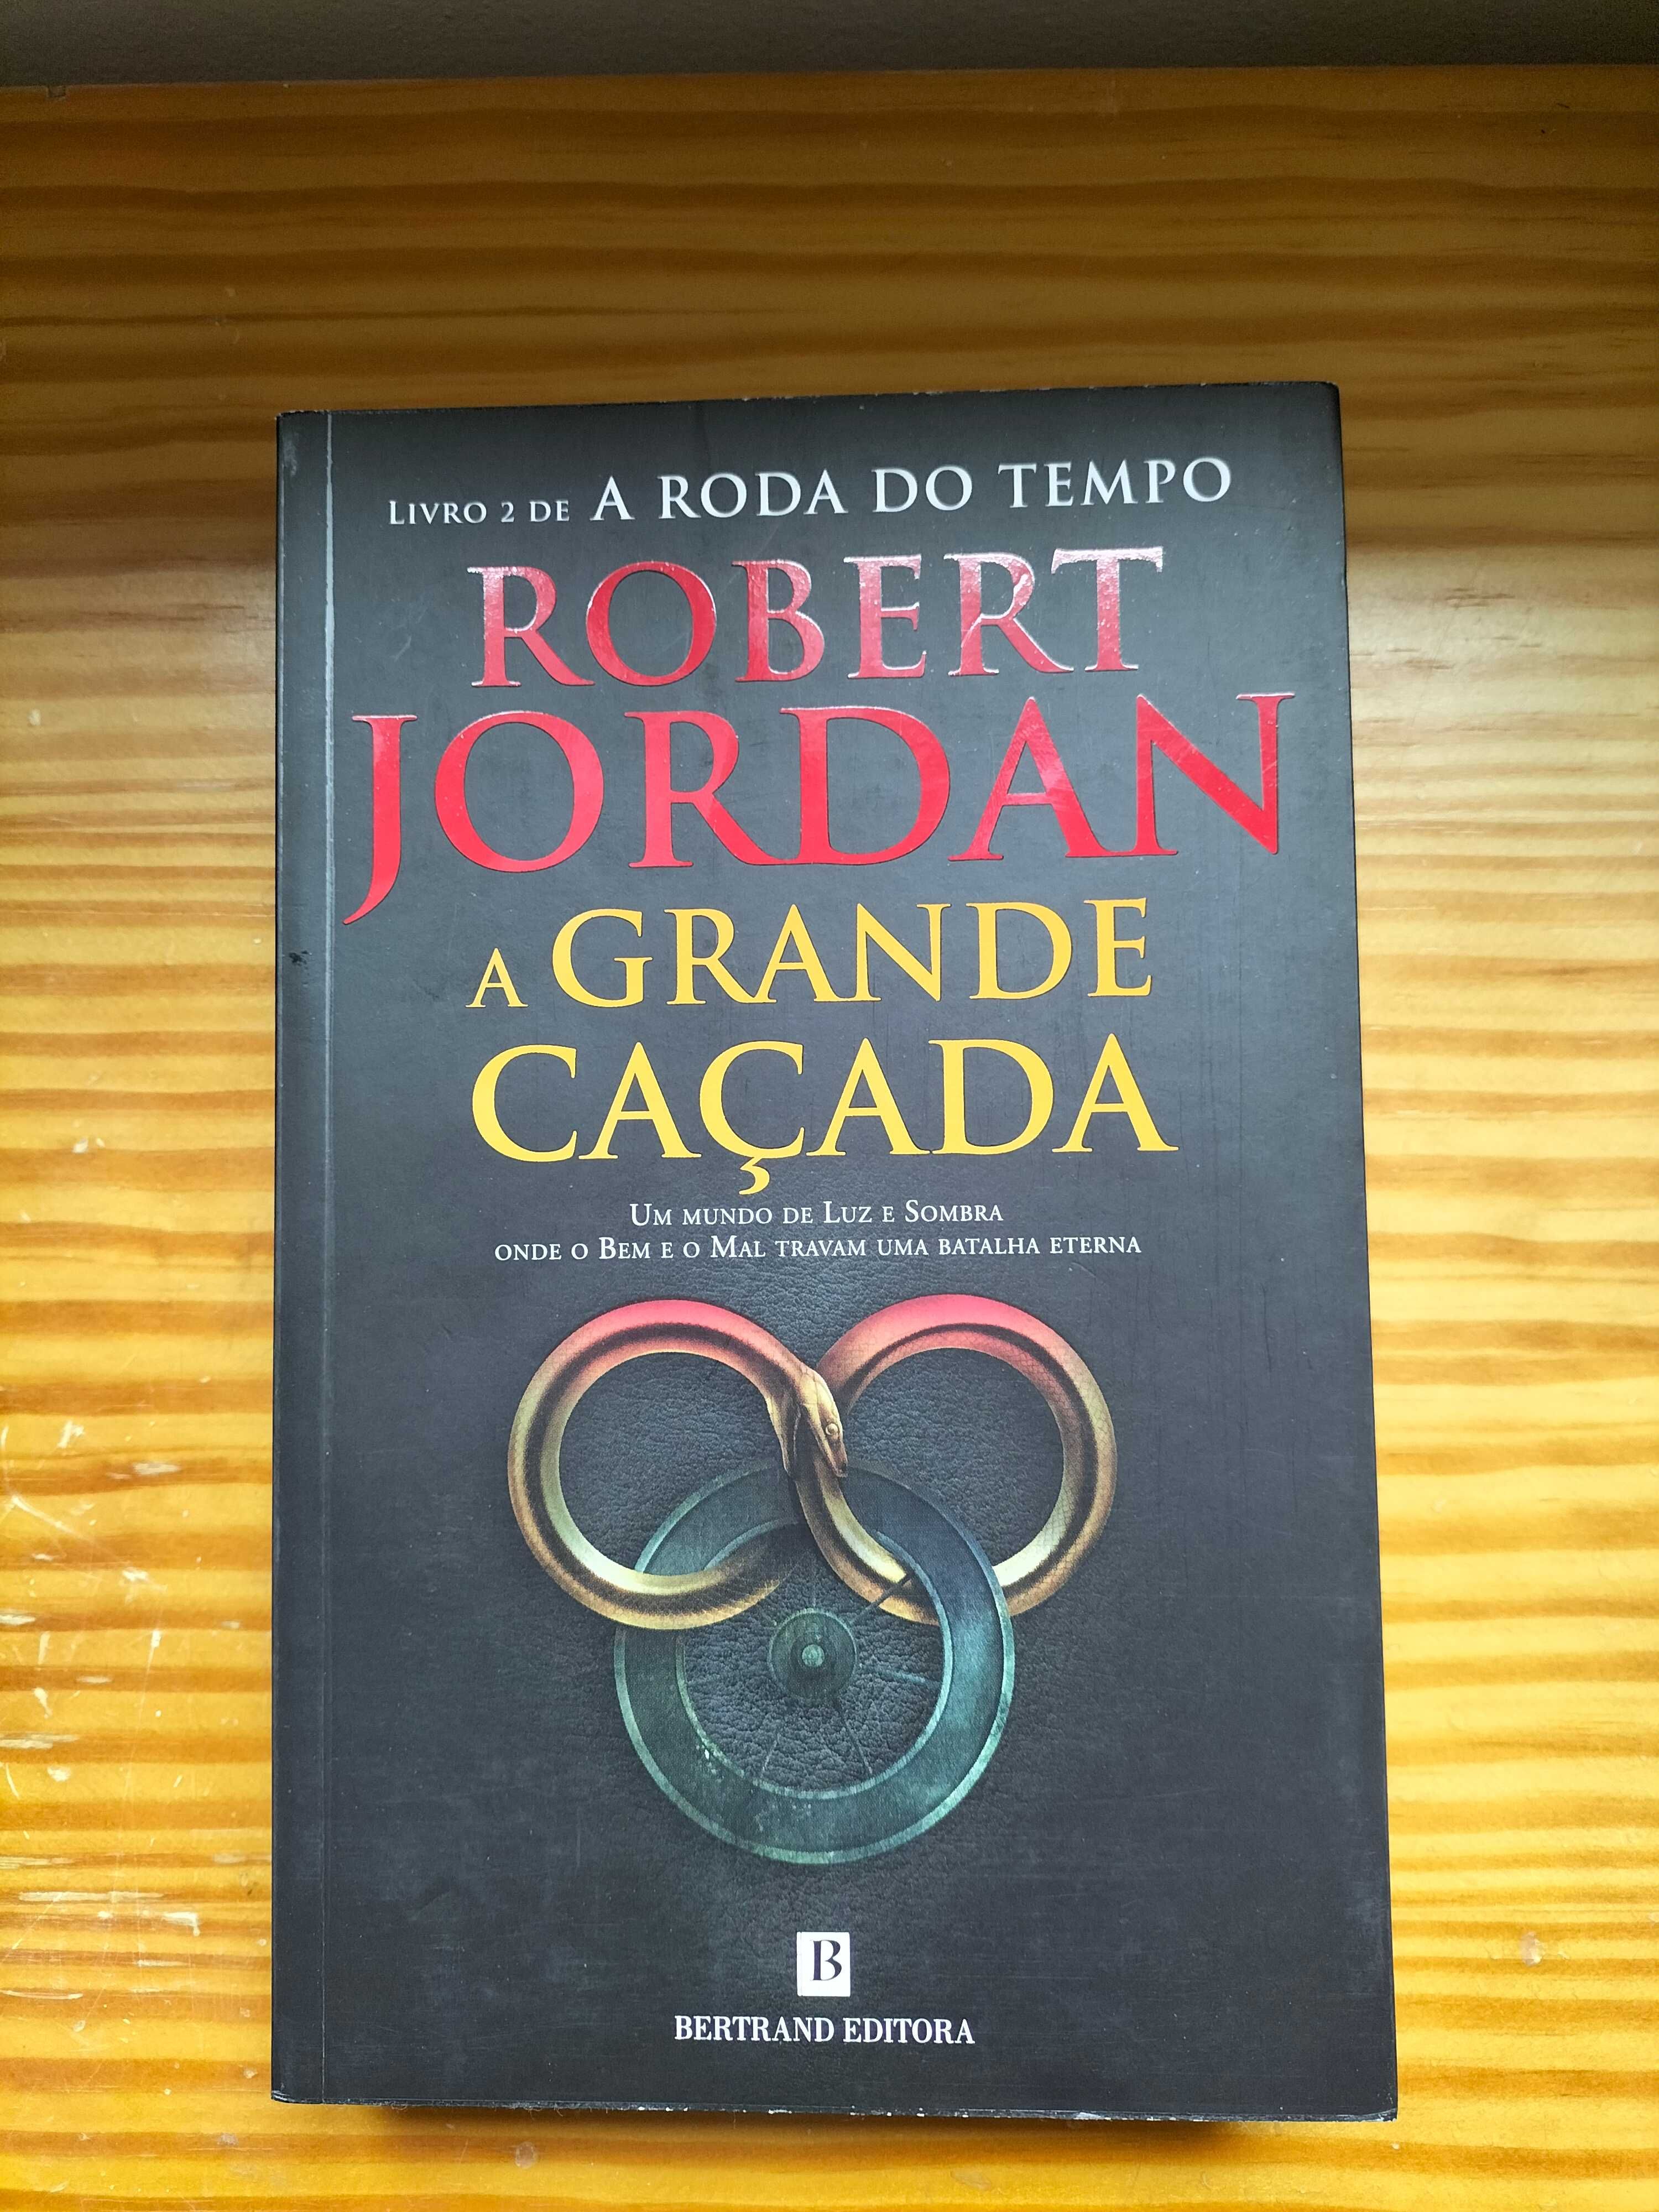 A Grande Caçada – Livro 2 da Roda do Tempo de Robert Jordan